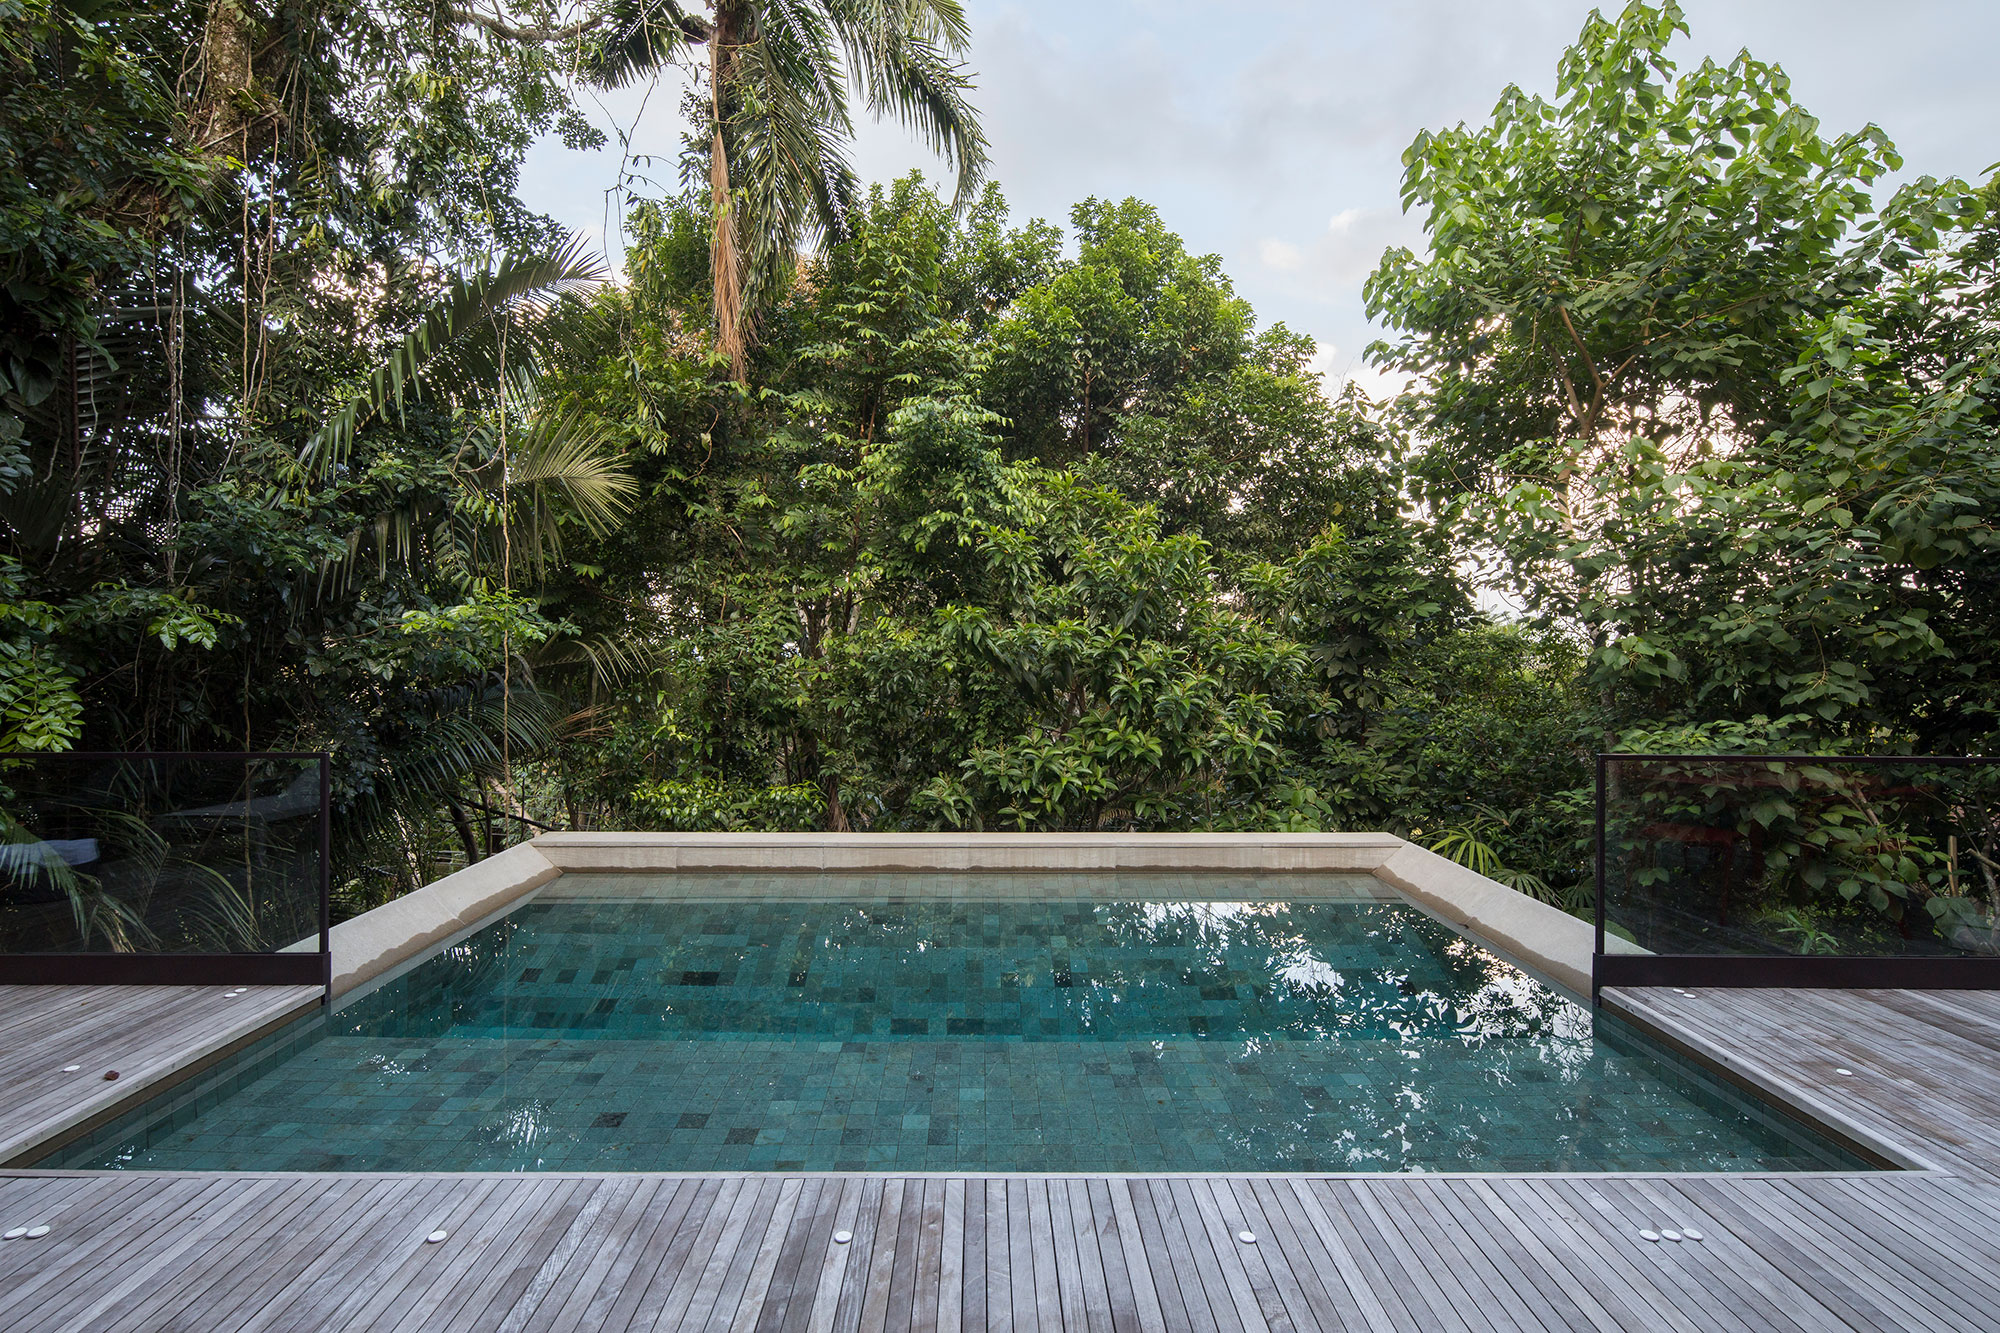 Casa de 153 m² se camufla em meio à natureza do litoral paulista. Projeto de Daniel Fromer, interiores de Julyana Bortolotto. Na foto, piscina com borda infinita e vista para o jardim.